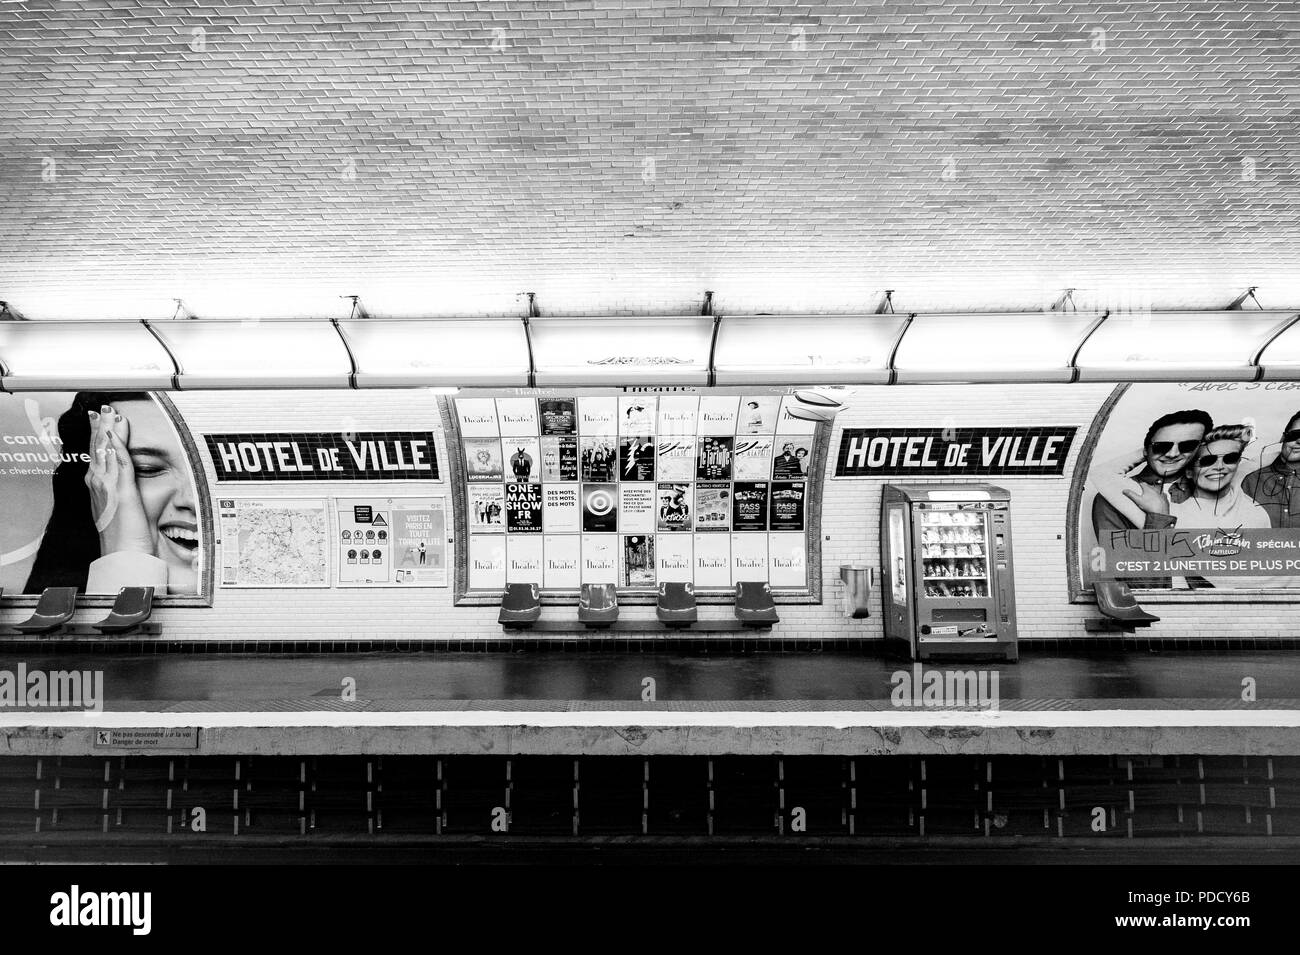 La station de métro Hôtel de Ville à Paris, France Banque D'Images